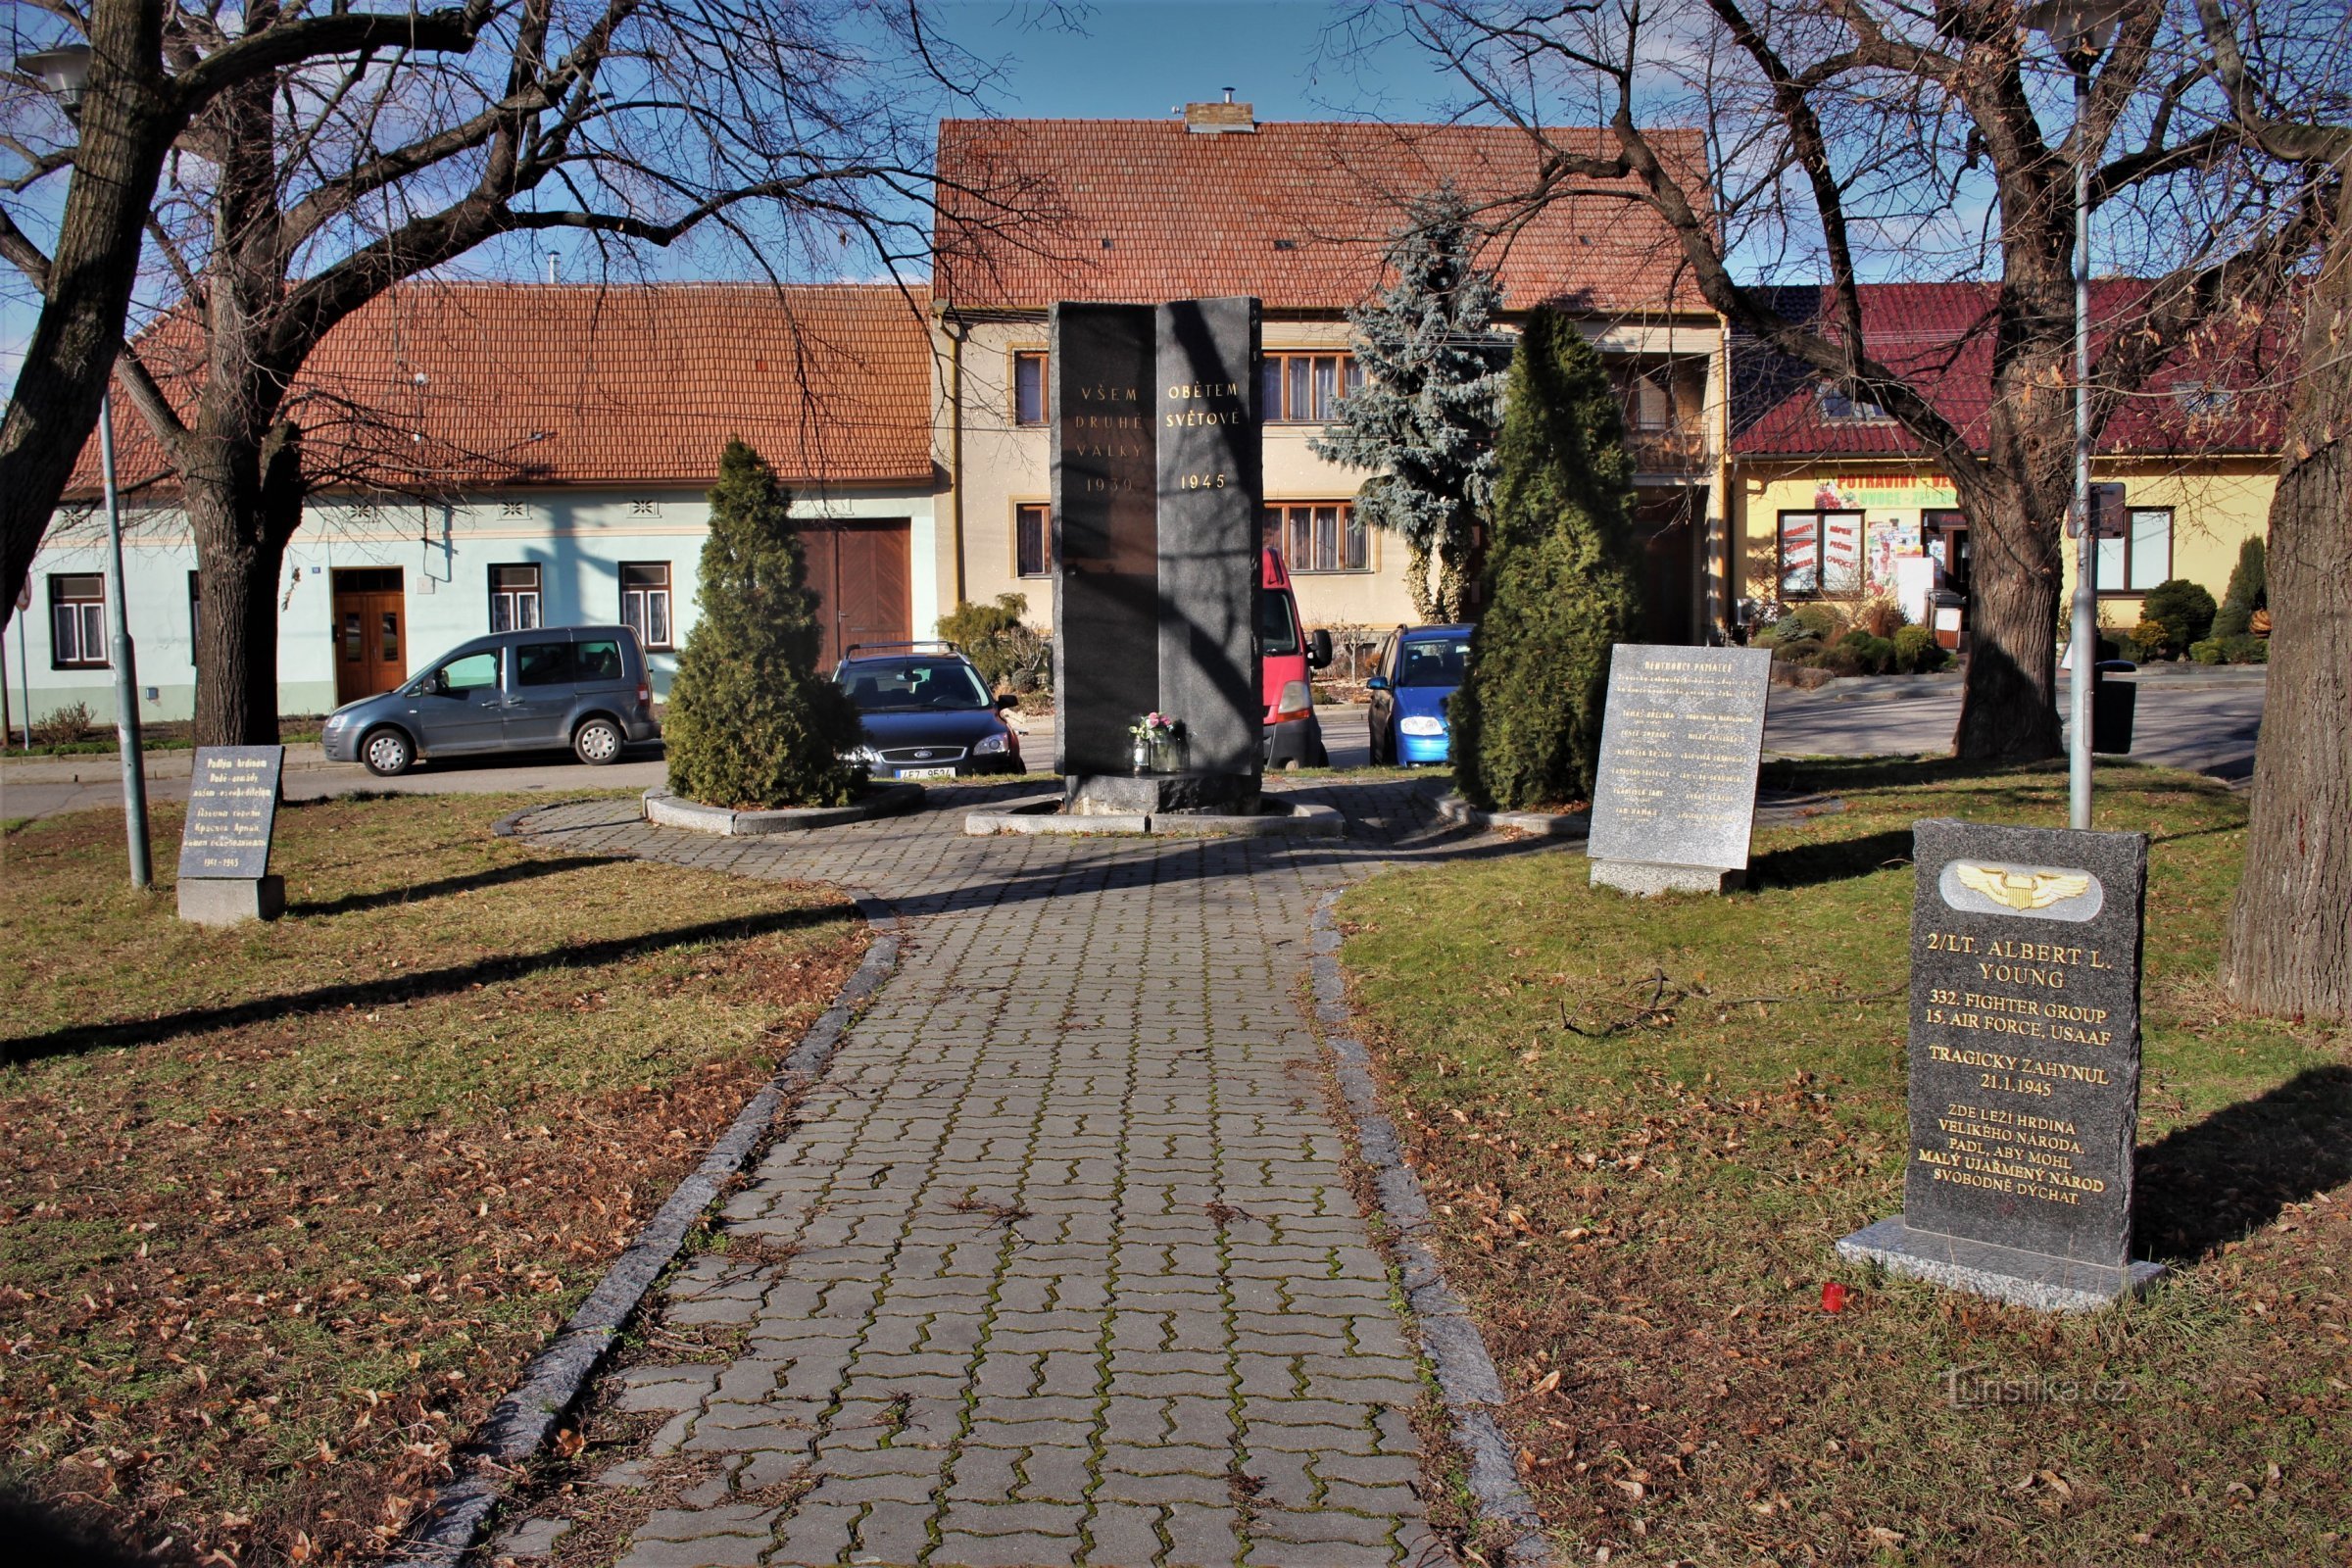 Het monument maakt deel uit van een gebedshuis op Náměstí Svobody in het centrum van het dorp